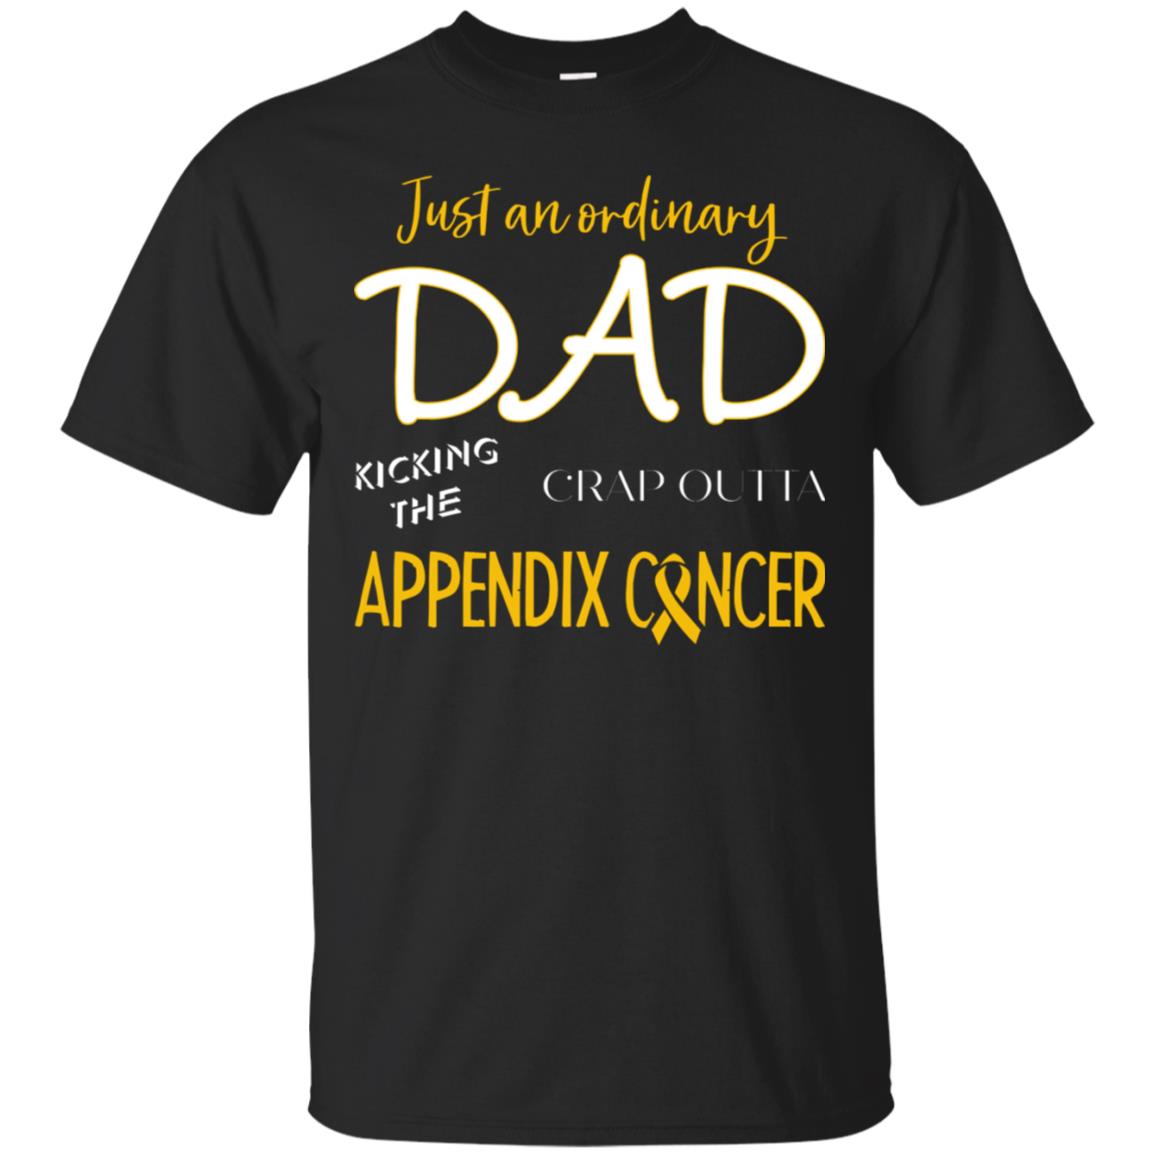 Just An Ordinary Dad Kicking The Crap Outta Appendix Cancer ShirtG200 Gildan Ultra Cotton T-Shirt